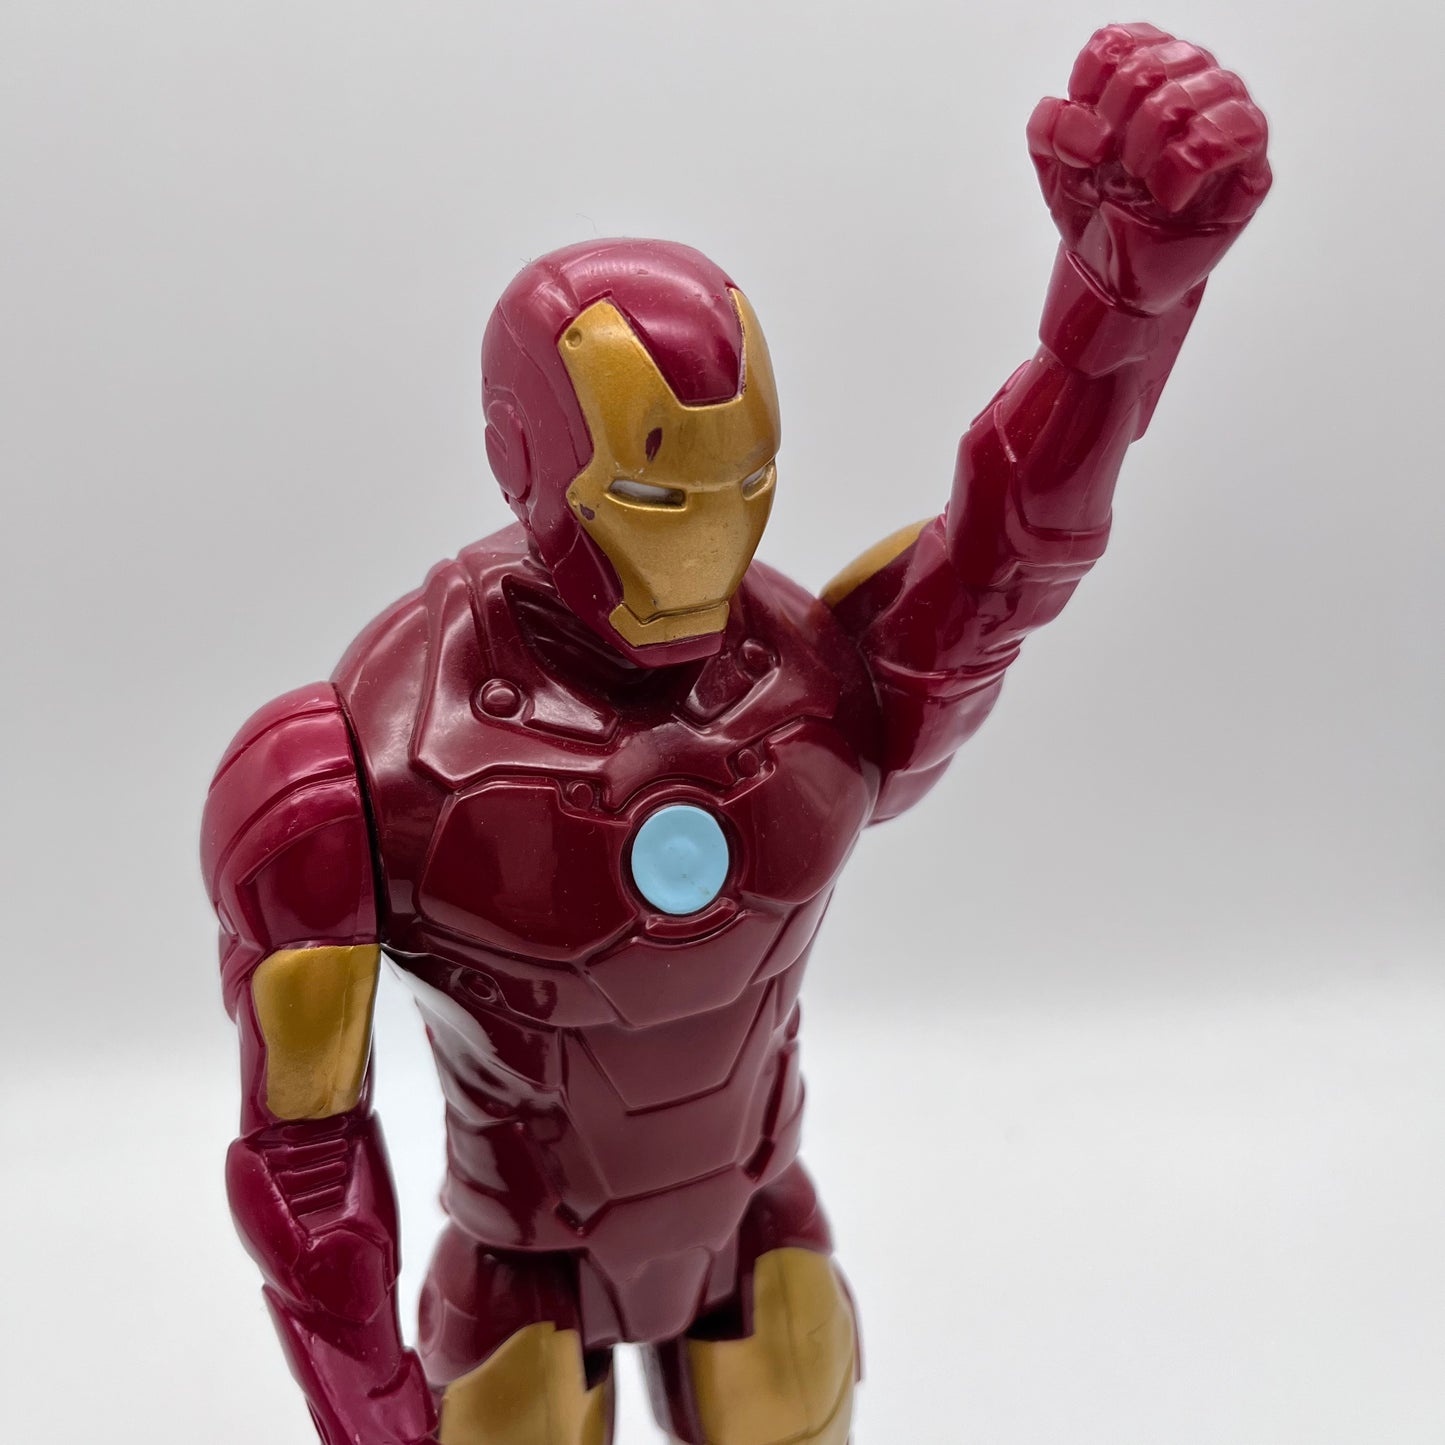 2013 Iron Man Action Figure 12”